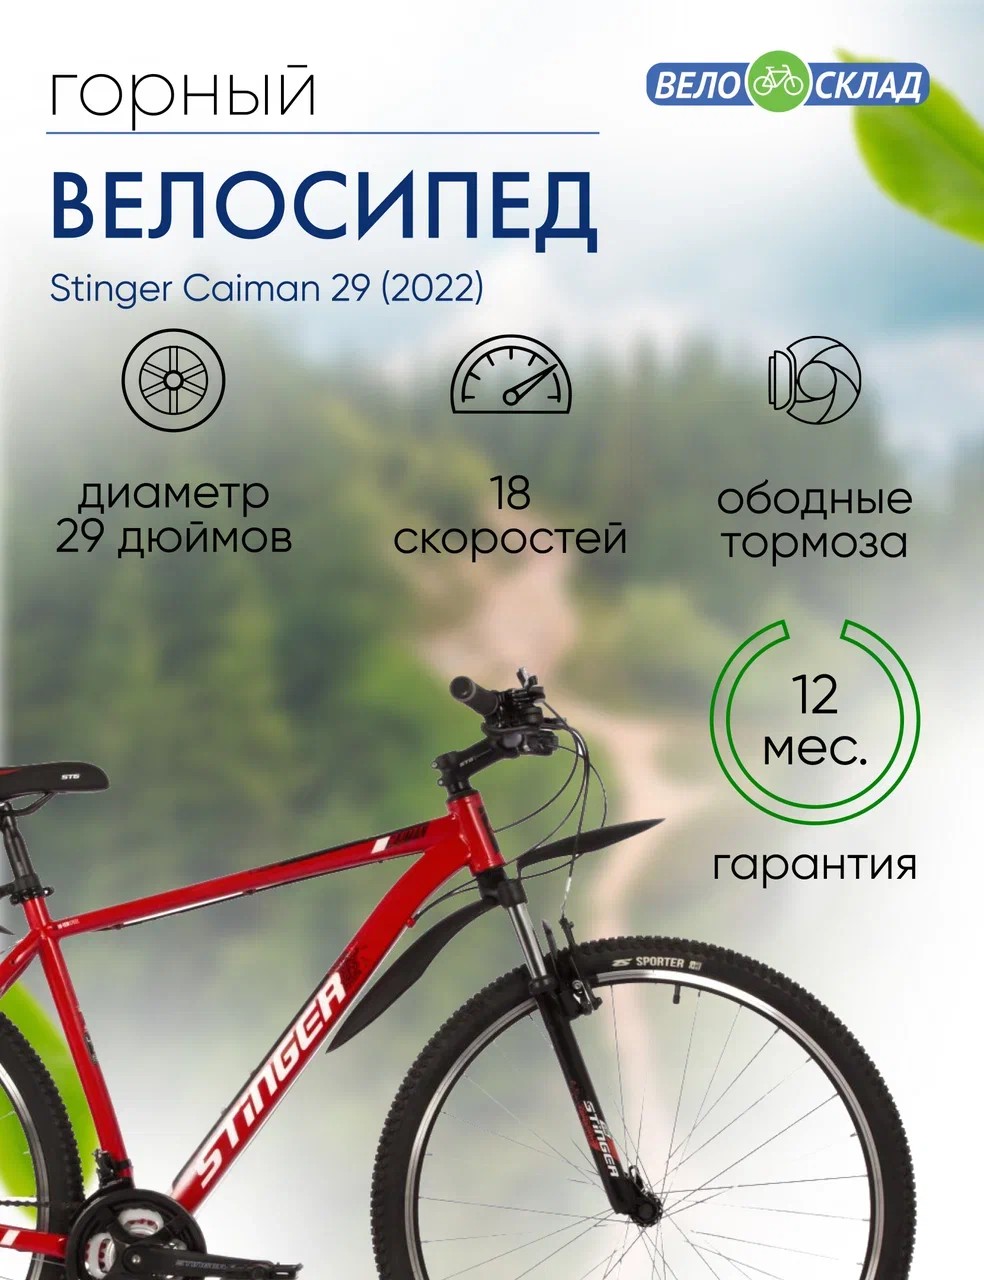 Горный велосипед Stinger Caiman 29, год 2022, цвет Красный, ростовка 18